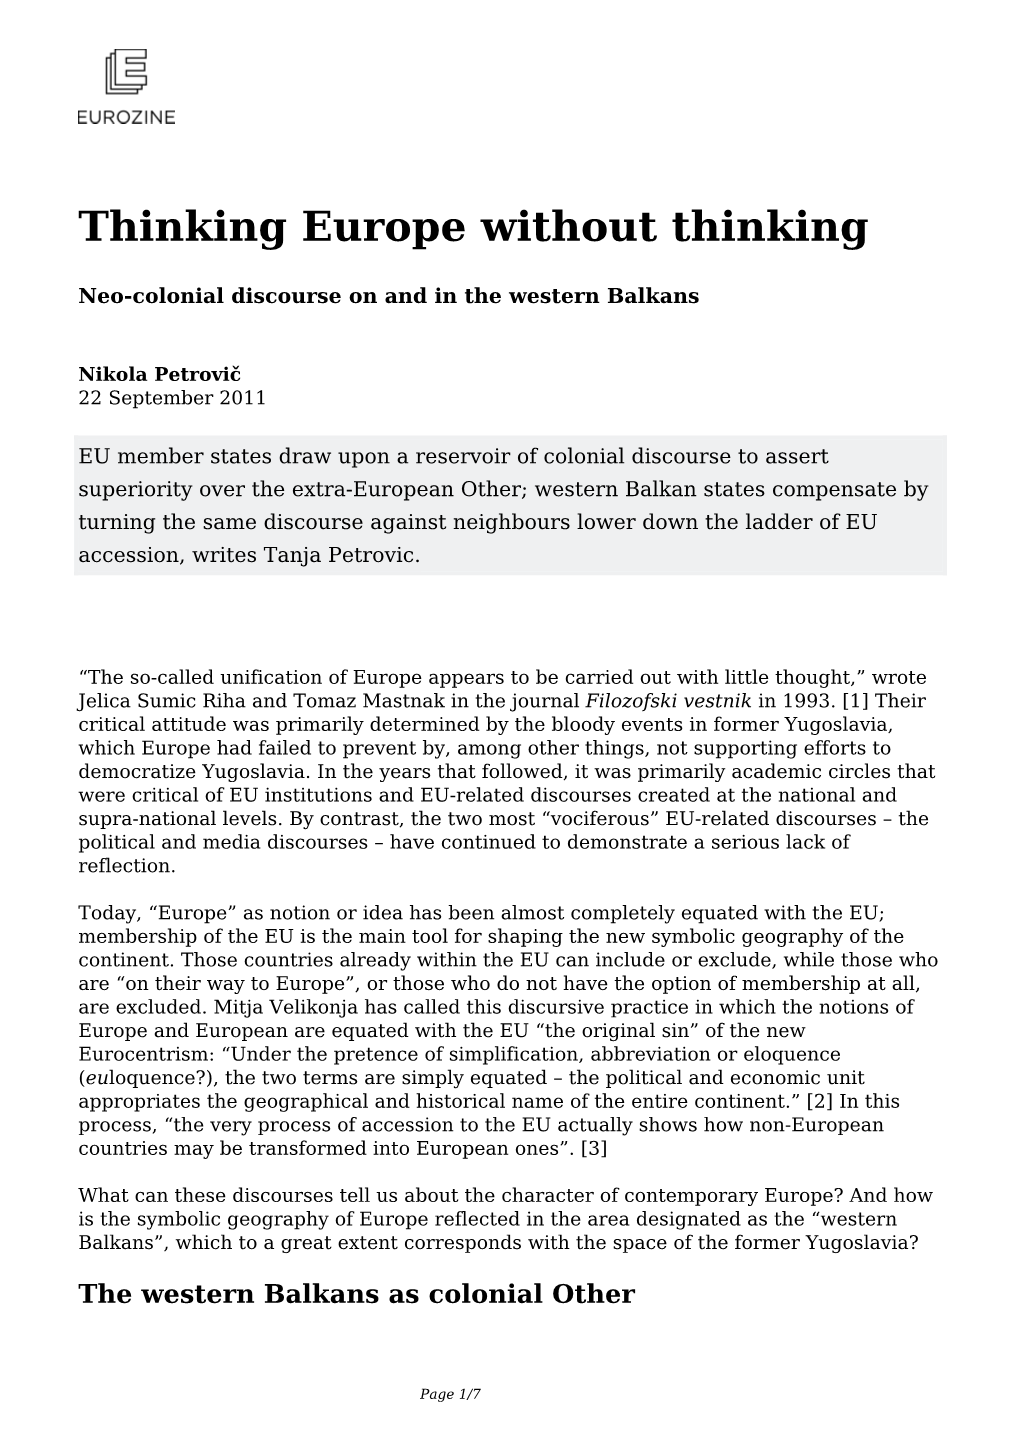 Thinking Europe Without Thinking